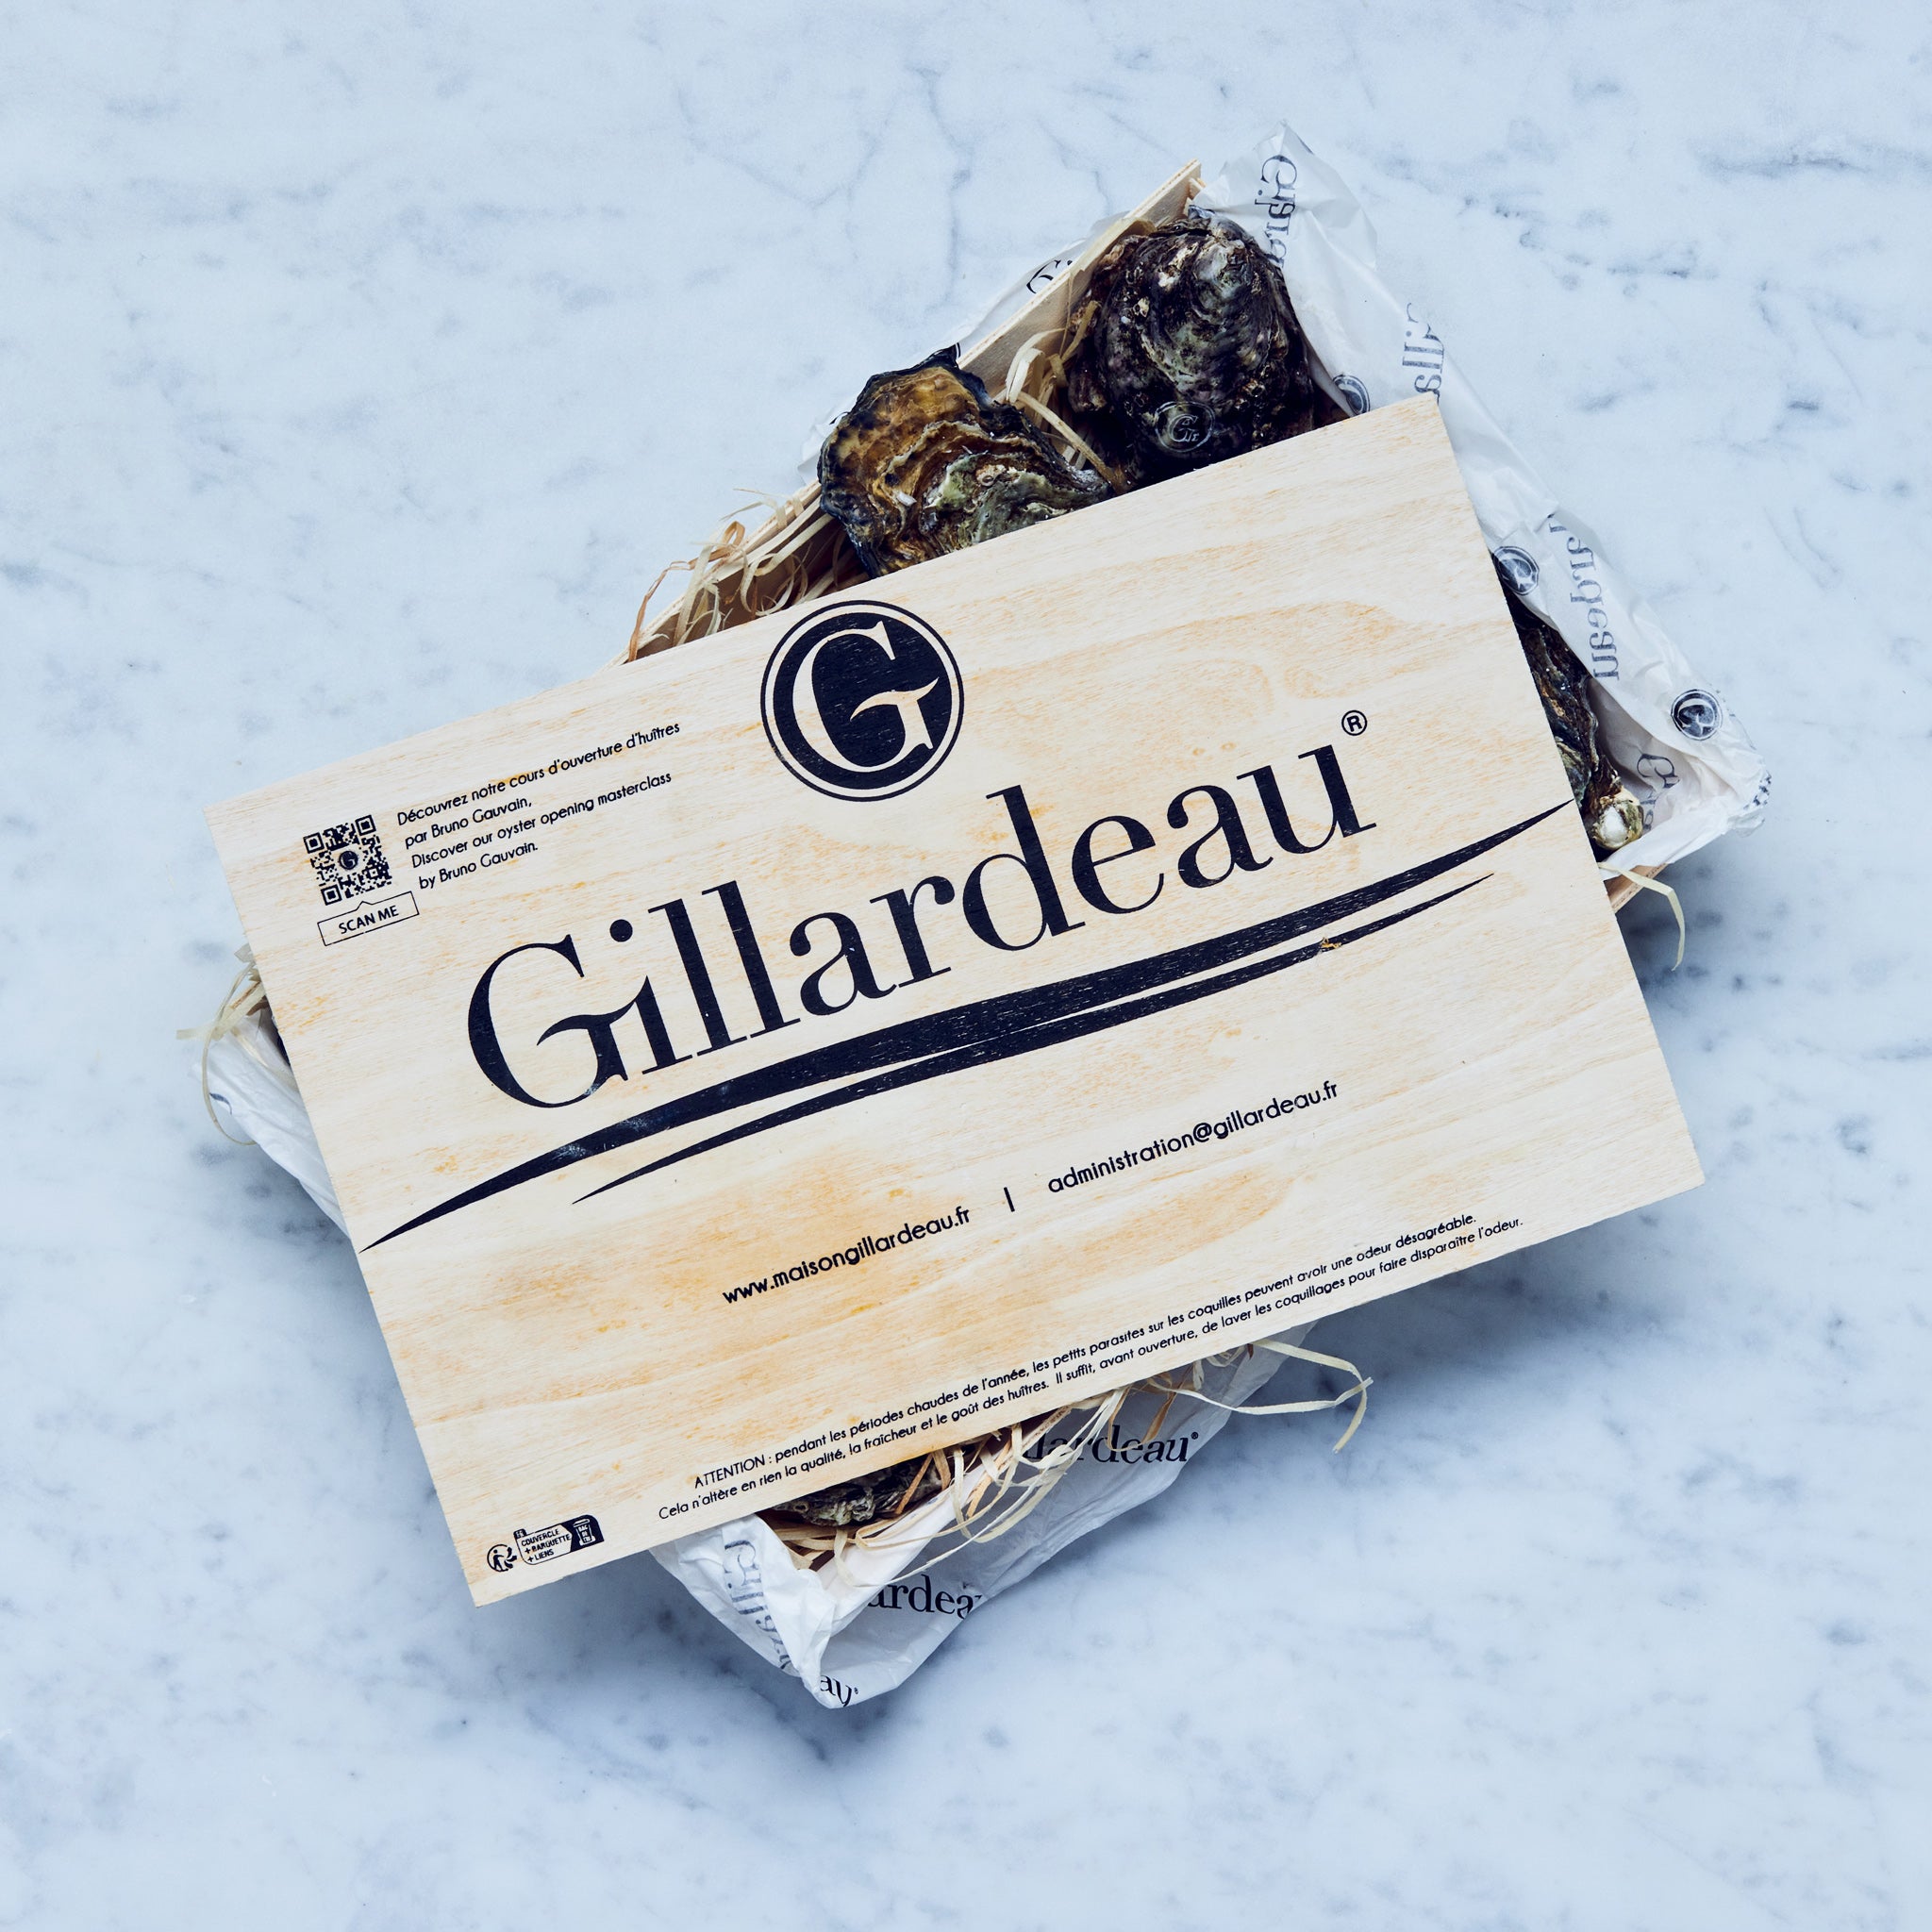 Frische Gilleardeu Austern in einer Holzkiste mit Logo. Gillardeau austern kaufen.